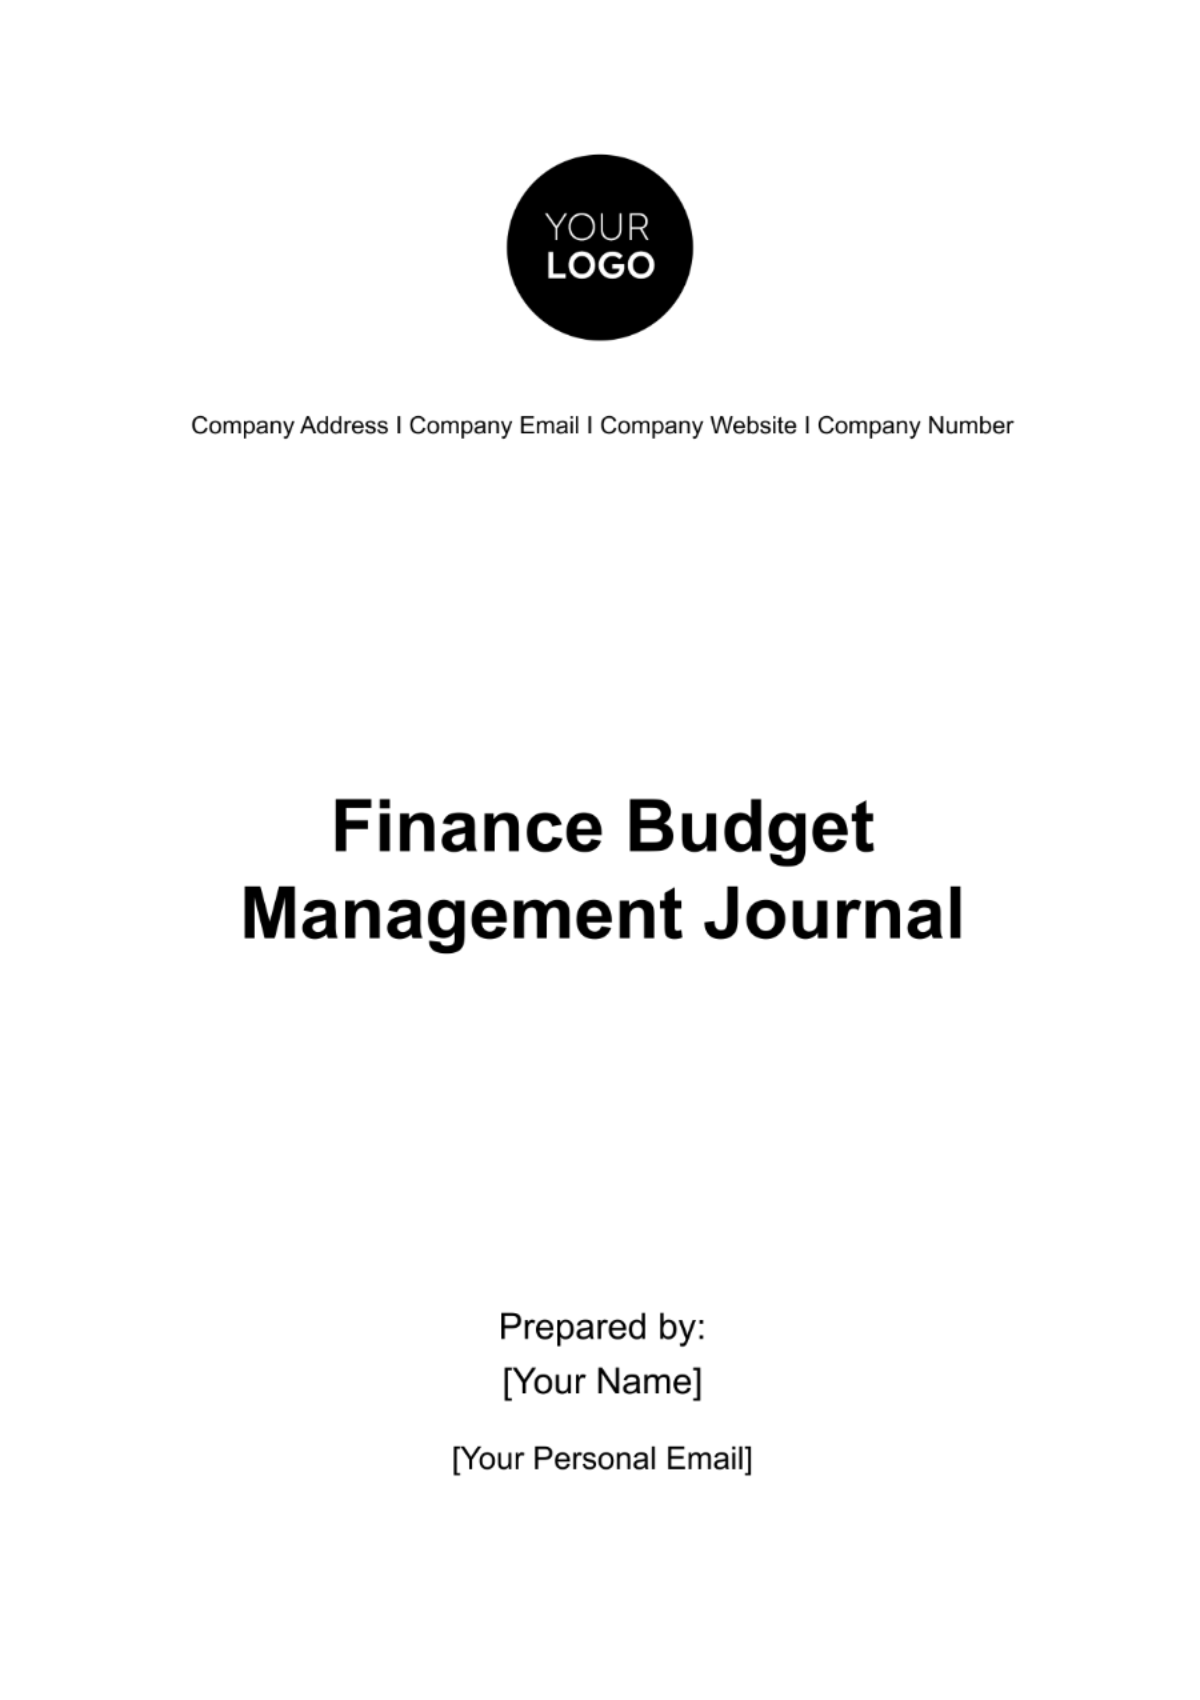 Finance Budget Management Journal Template